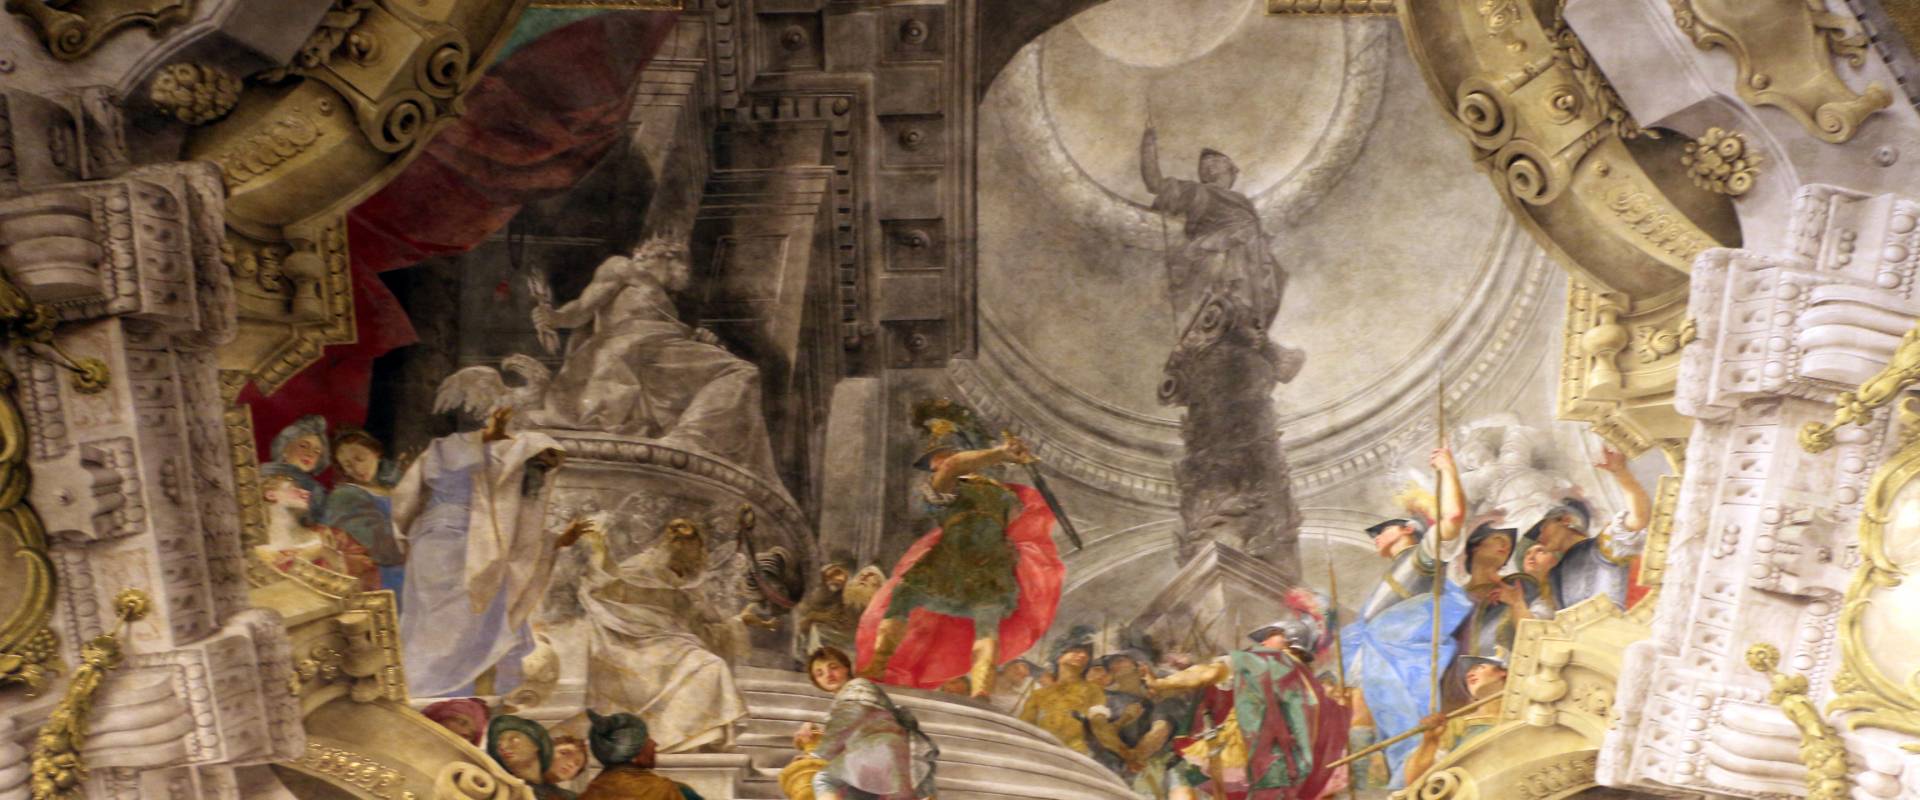 Donato creti, alessandro taglia il nodo gordiano, 1708-10, palazzo pepoli 02 foto di Sailko